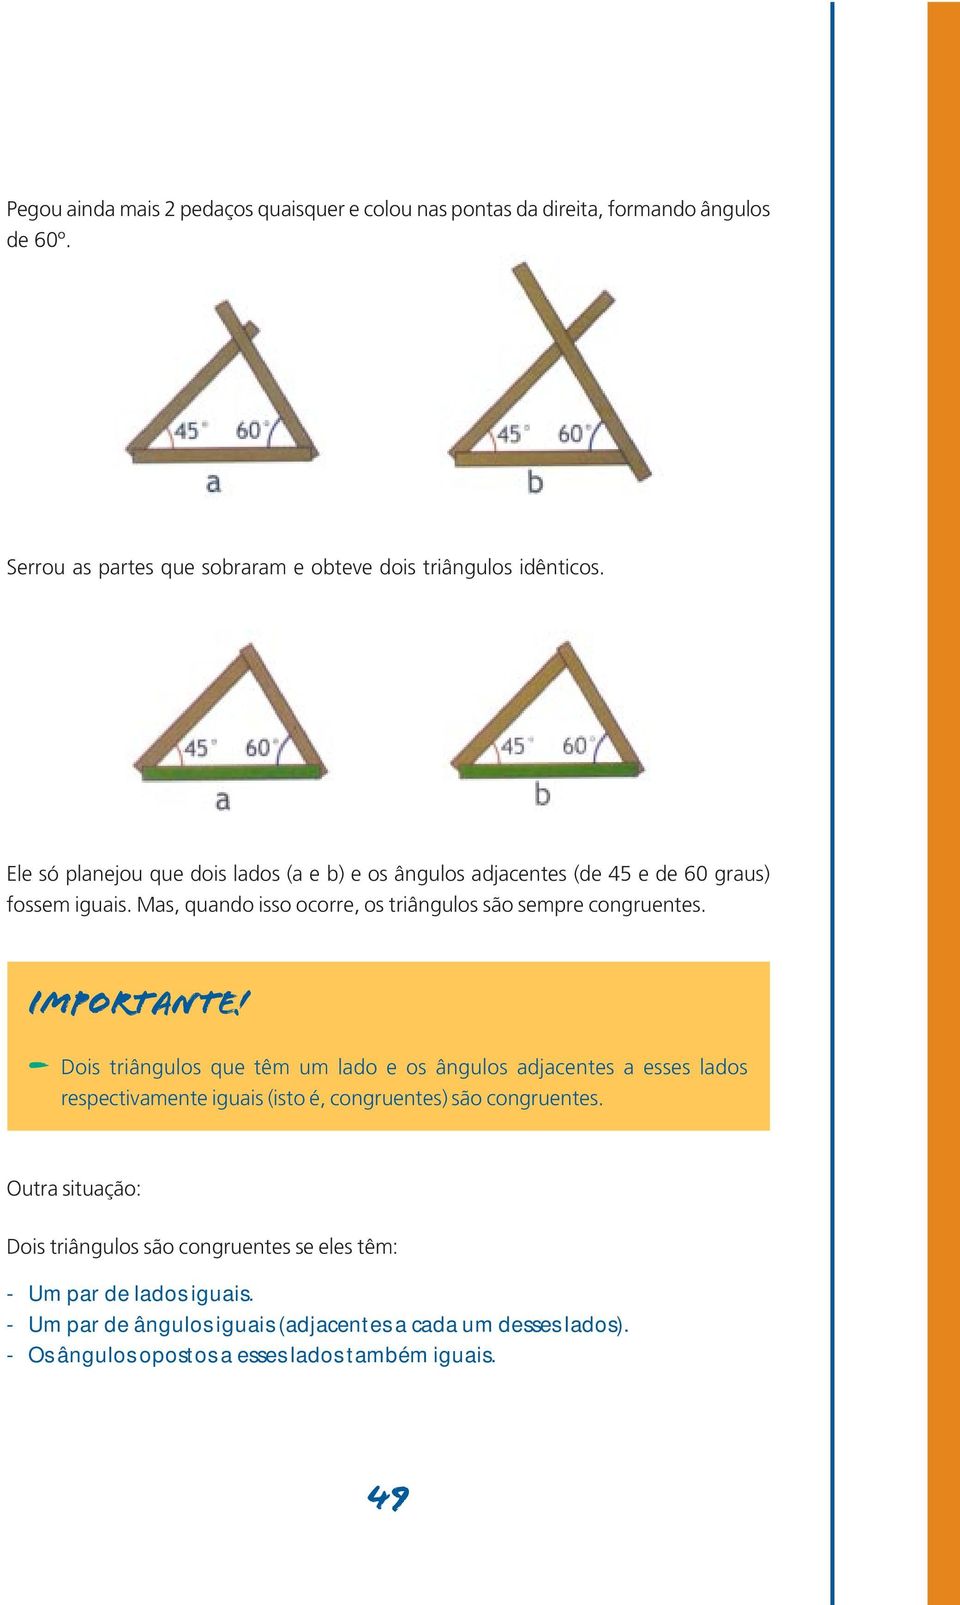 Importante! - Dois triângulos que têm um lado e os ângulos adjacentes a esses lados respectivamente iguais (isto é, congruentes) são congruentes.